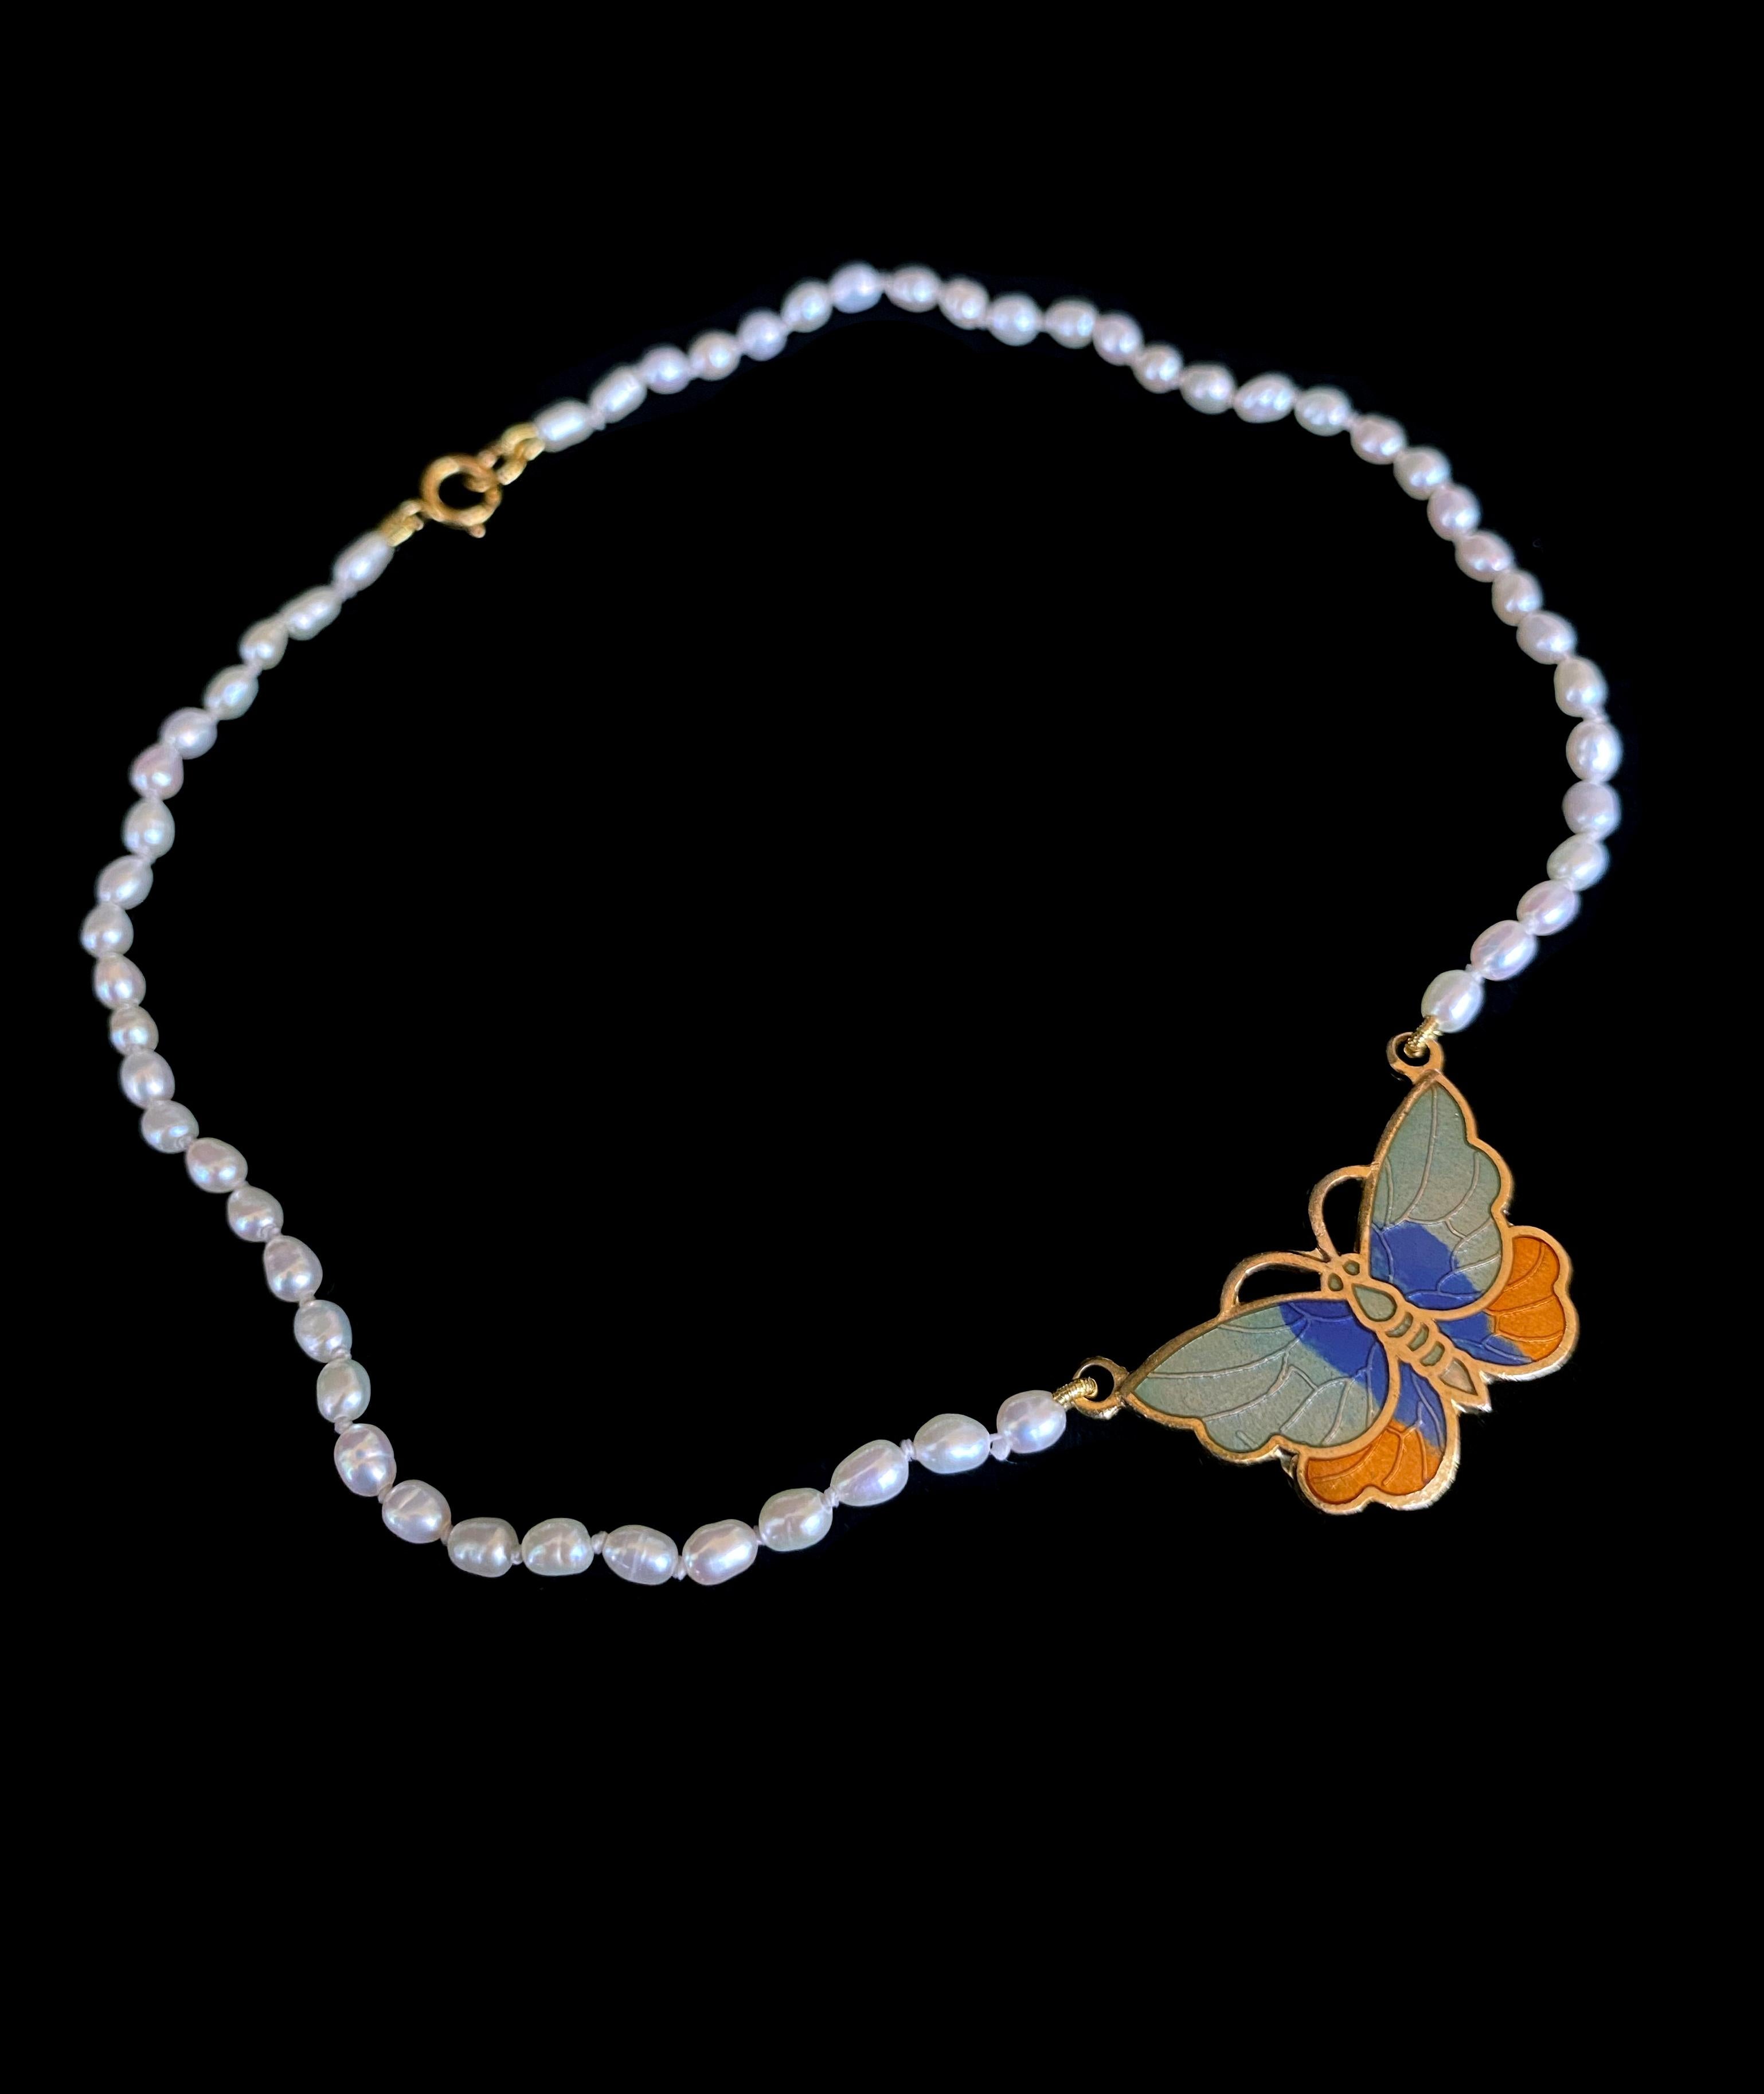 Schlichte und klassische Perlenkette für den kleinen Liebling in Ihrem Leben, von Marina J. Diese Kette zeichnet sich durch einen aqua-, blau- und orangefarbenen, vergoldeten Emaille-Schmetterling als Herzstück aus. Der Schmetterling ist mit kleinen